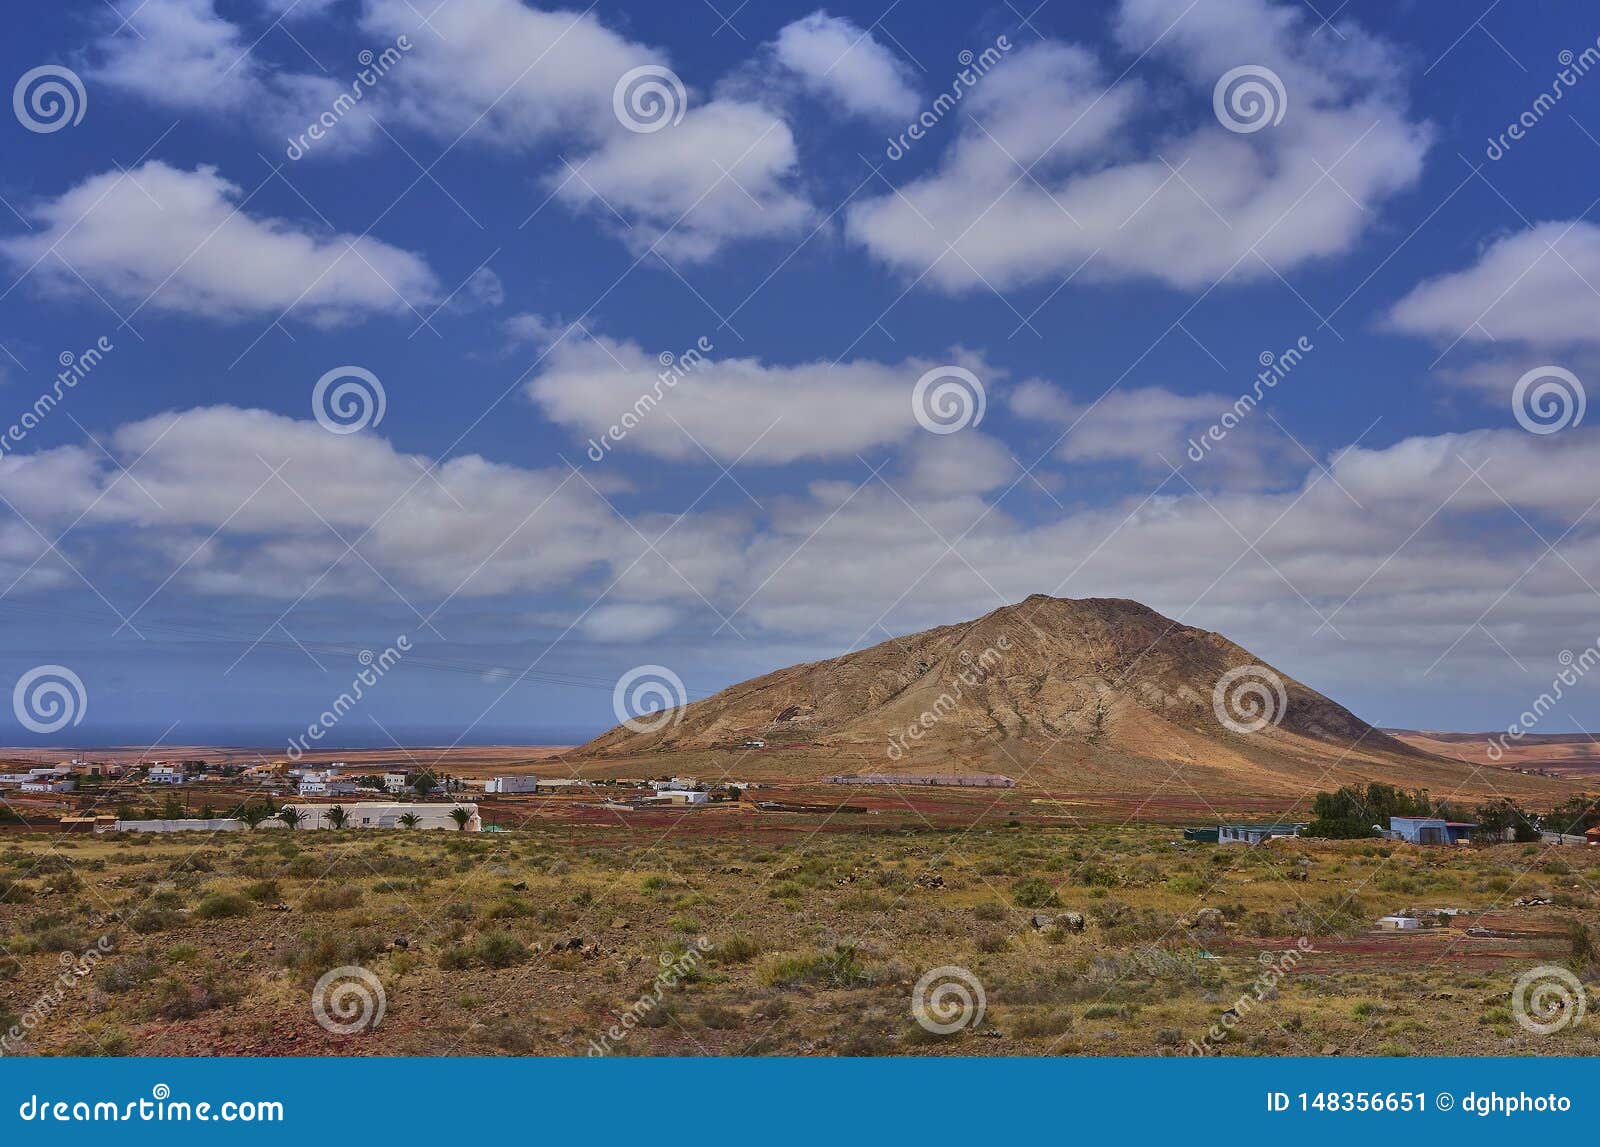 Scenic landscape on the island of fuerteventura in the atlantic ocean. Paisaje hermoso en la isla de Fuerteventura en el Oc?ano Atl?ntico